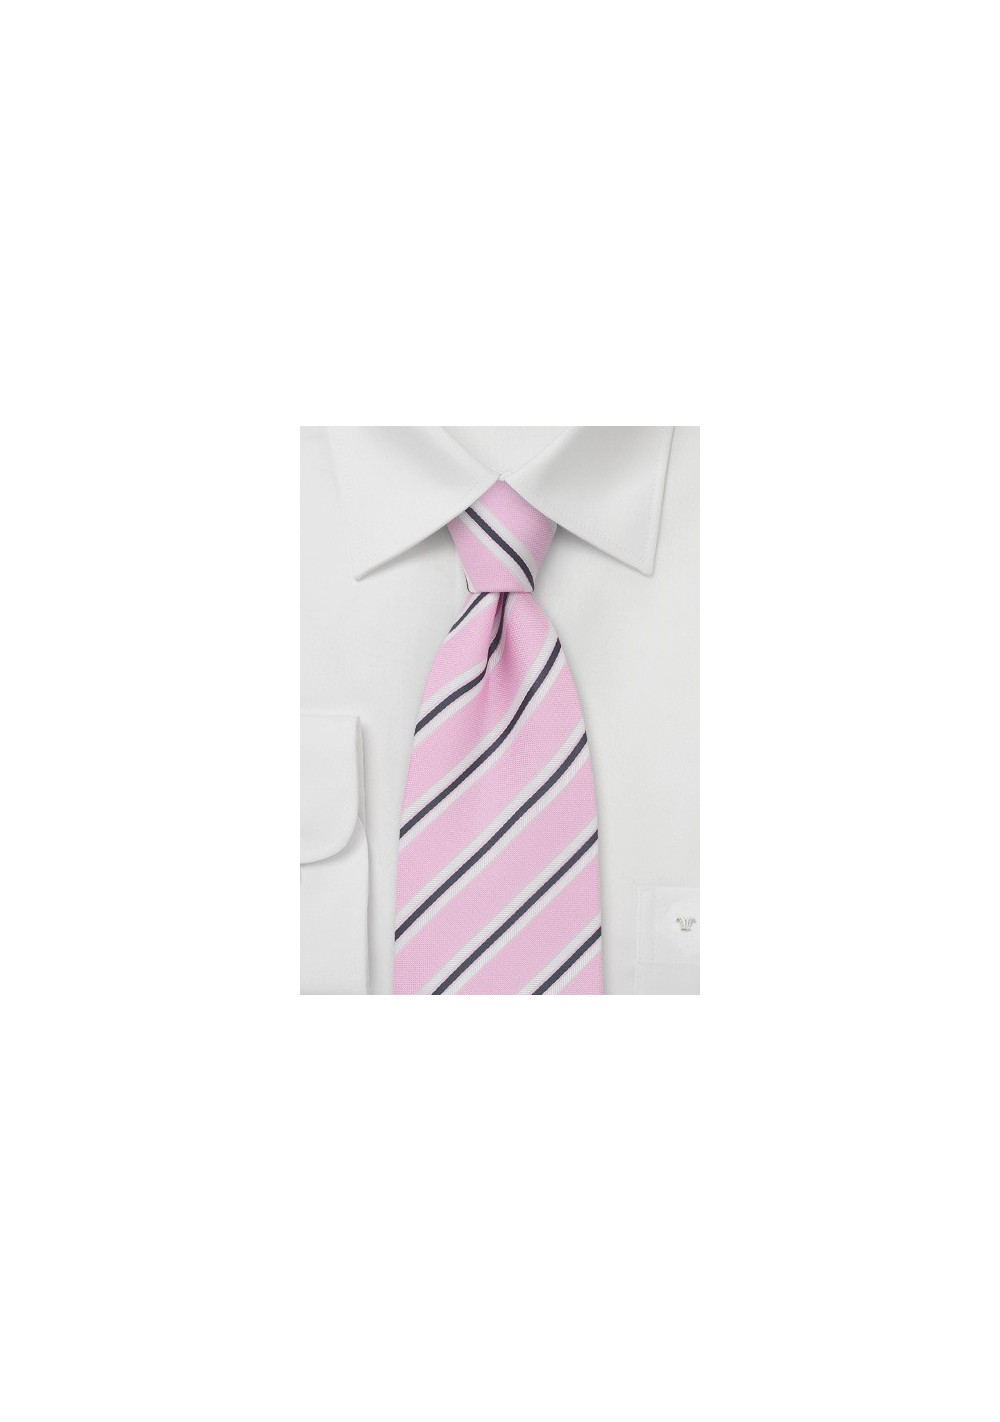 Light Pink Silk Tie by Cavallieri